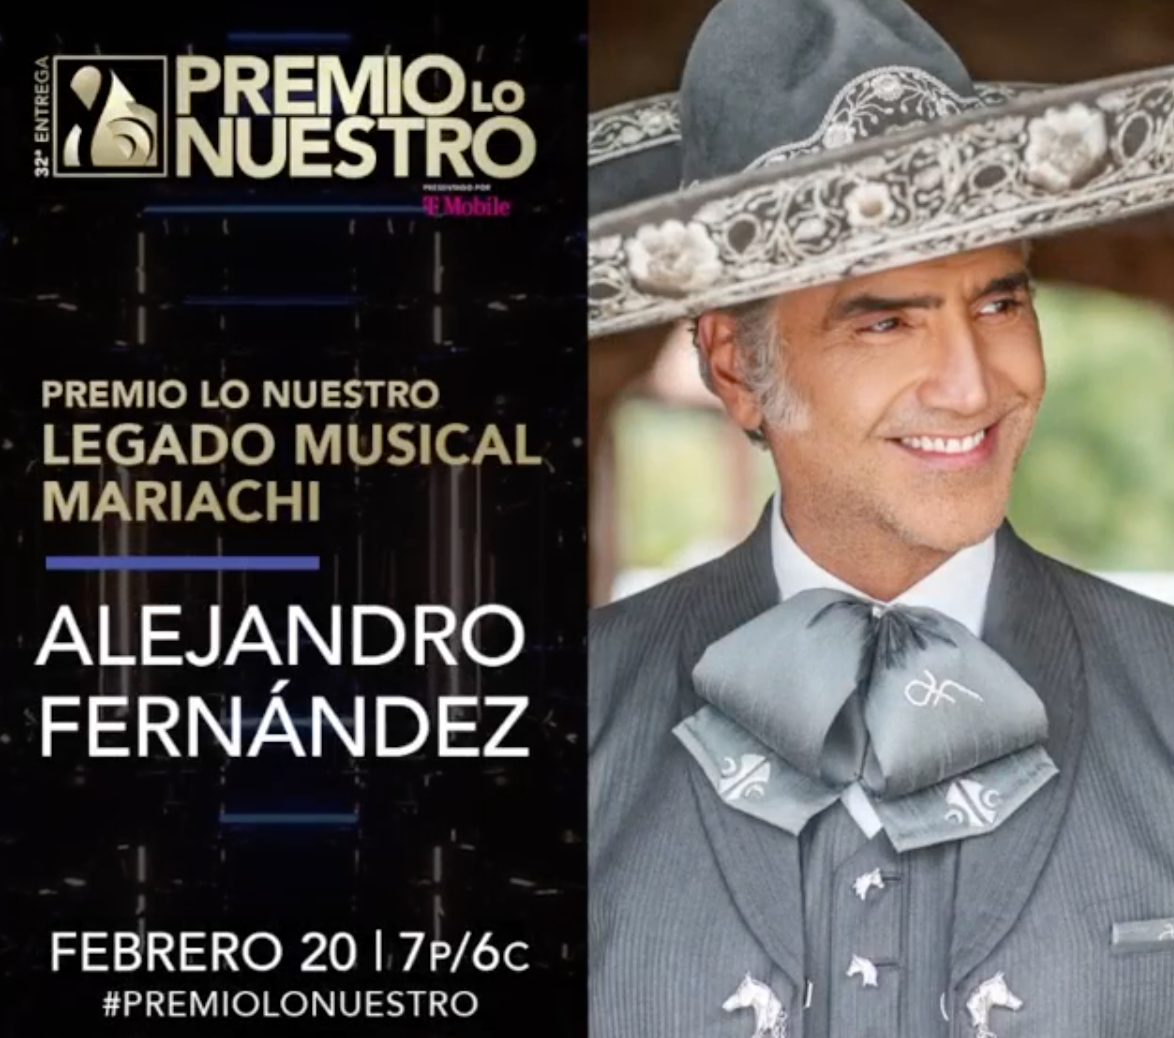 Alejandro Fernández será el primero en recibir el galardón especial "Premio Lo Nuestro Legado Musical - Mariachi"